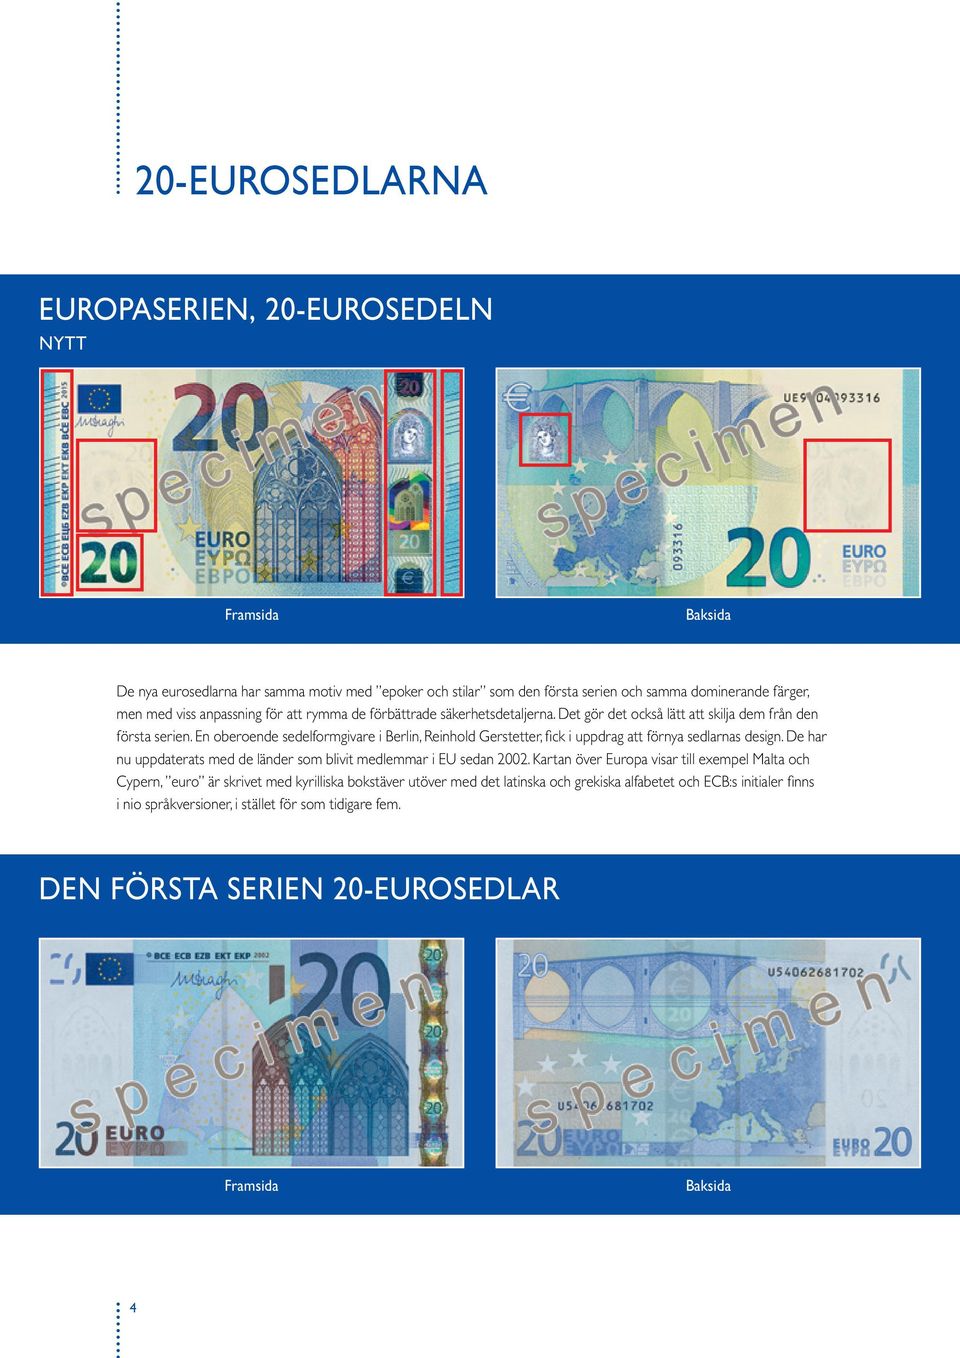 En oberoende sedelformgivare i Berlin, Reinhold Gerstetter, fick i uppdrag att förnya sedlarnas design. De har nu uppdaterats med de länder som blivit medlemmar i EU sedan 02.